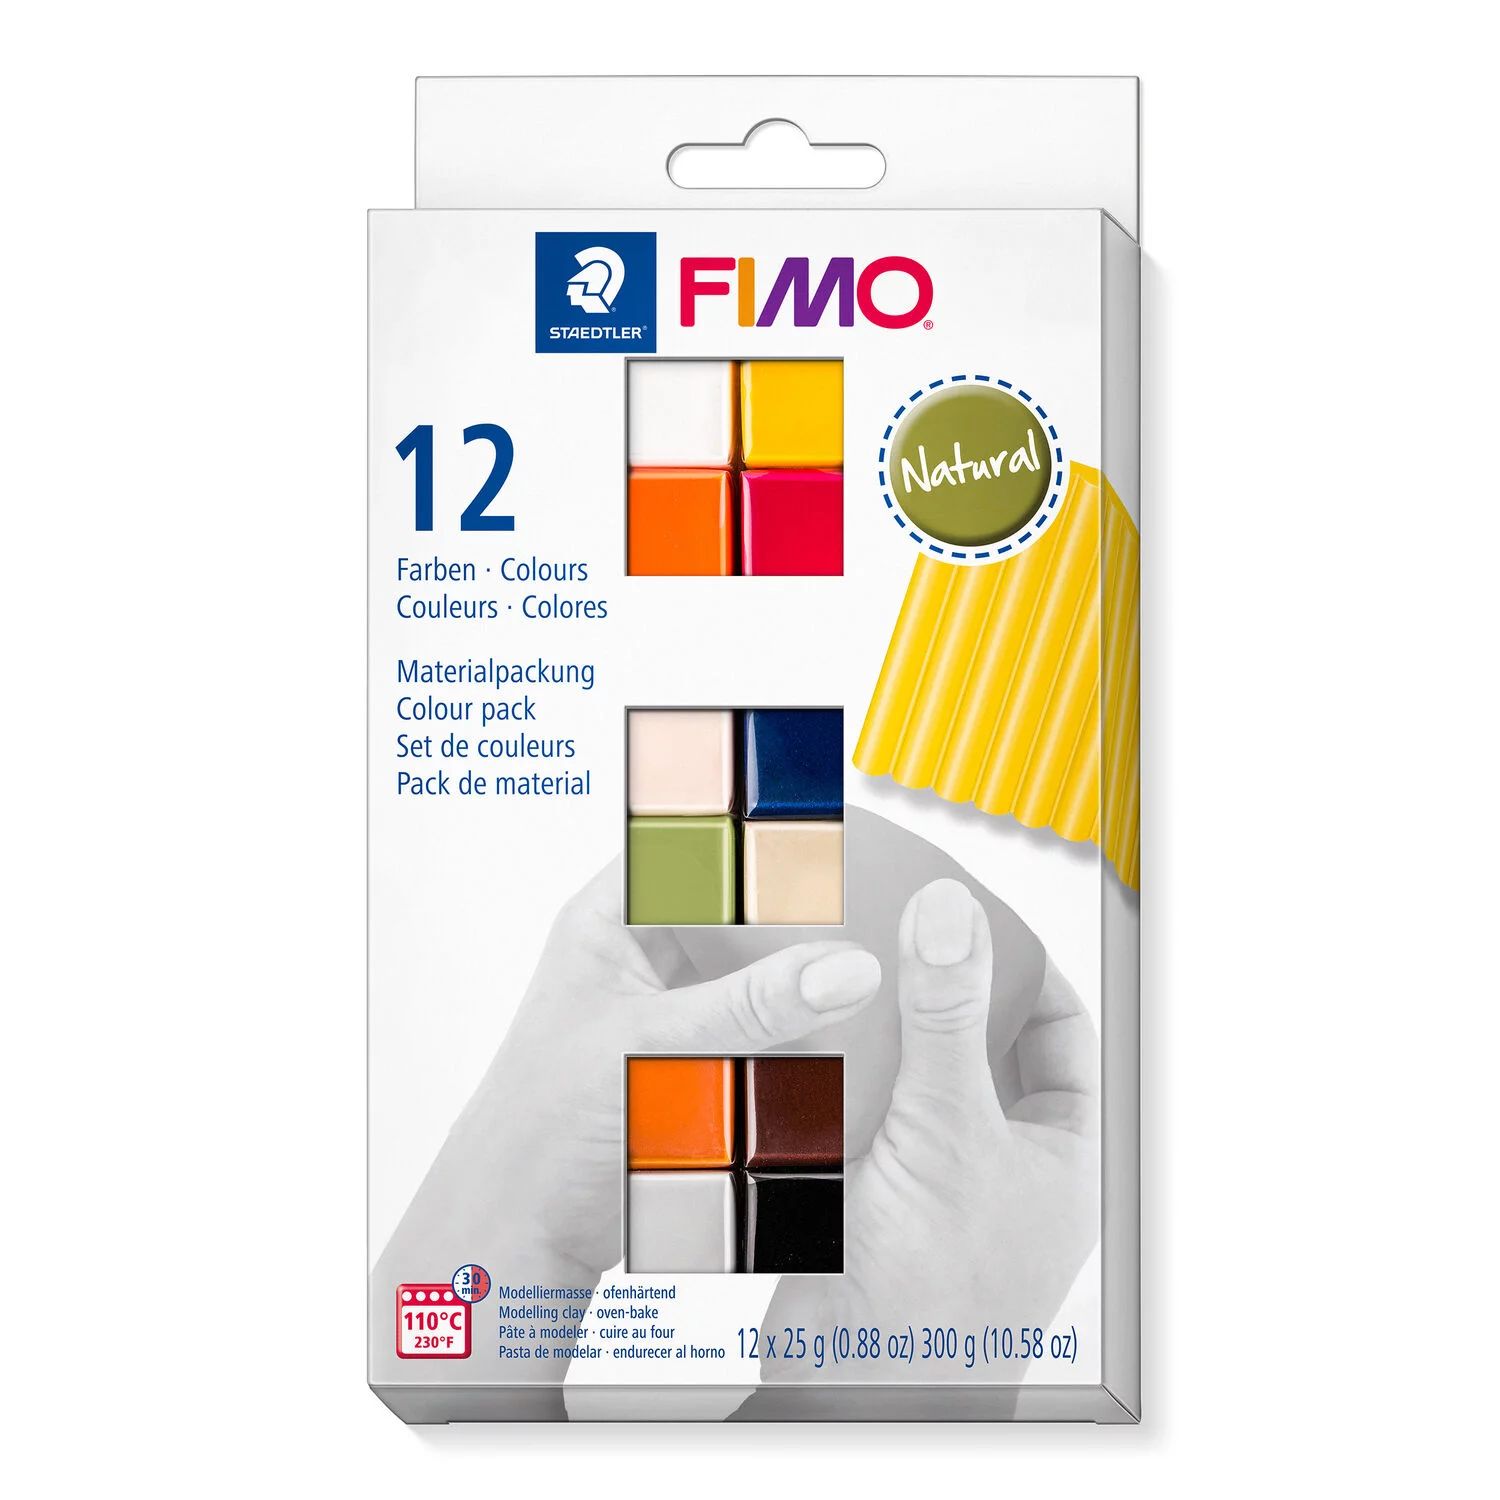 Staedtler Fimo Soft Diy Modelliermasse-Set Pen 4 Farben ofenhärtend Knetmasse 